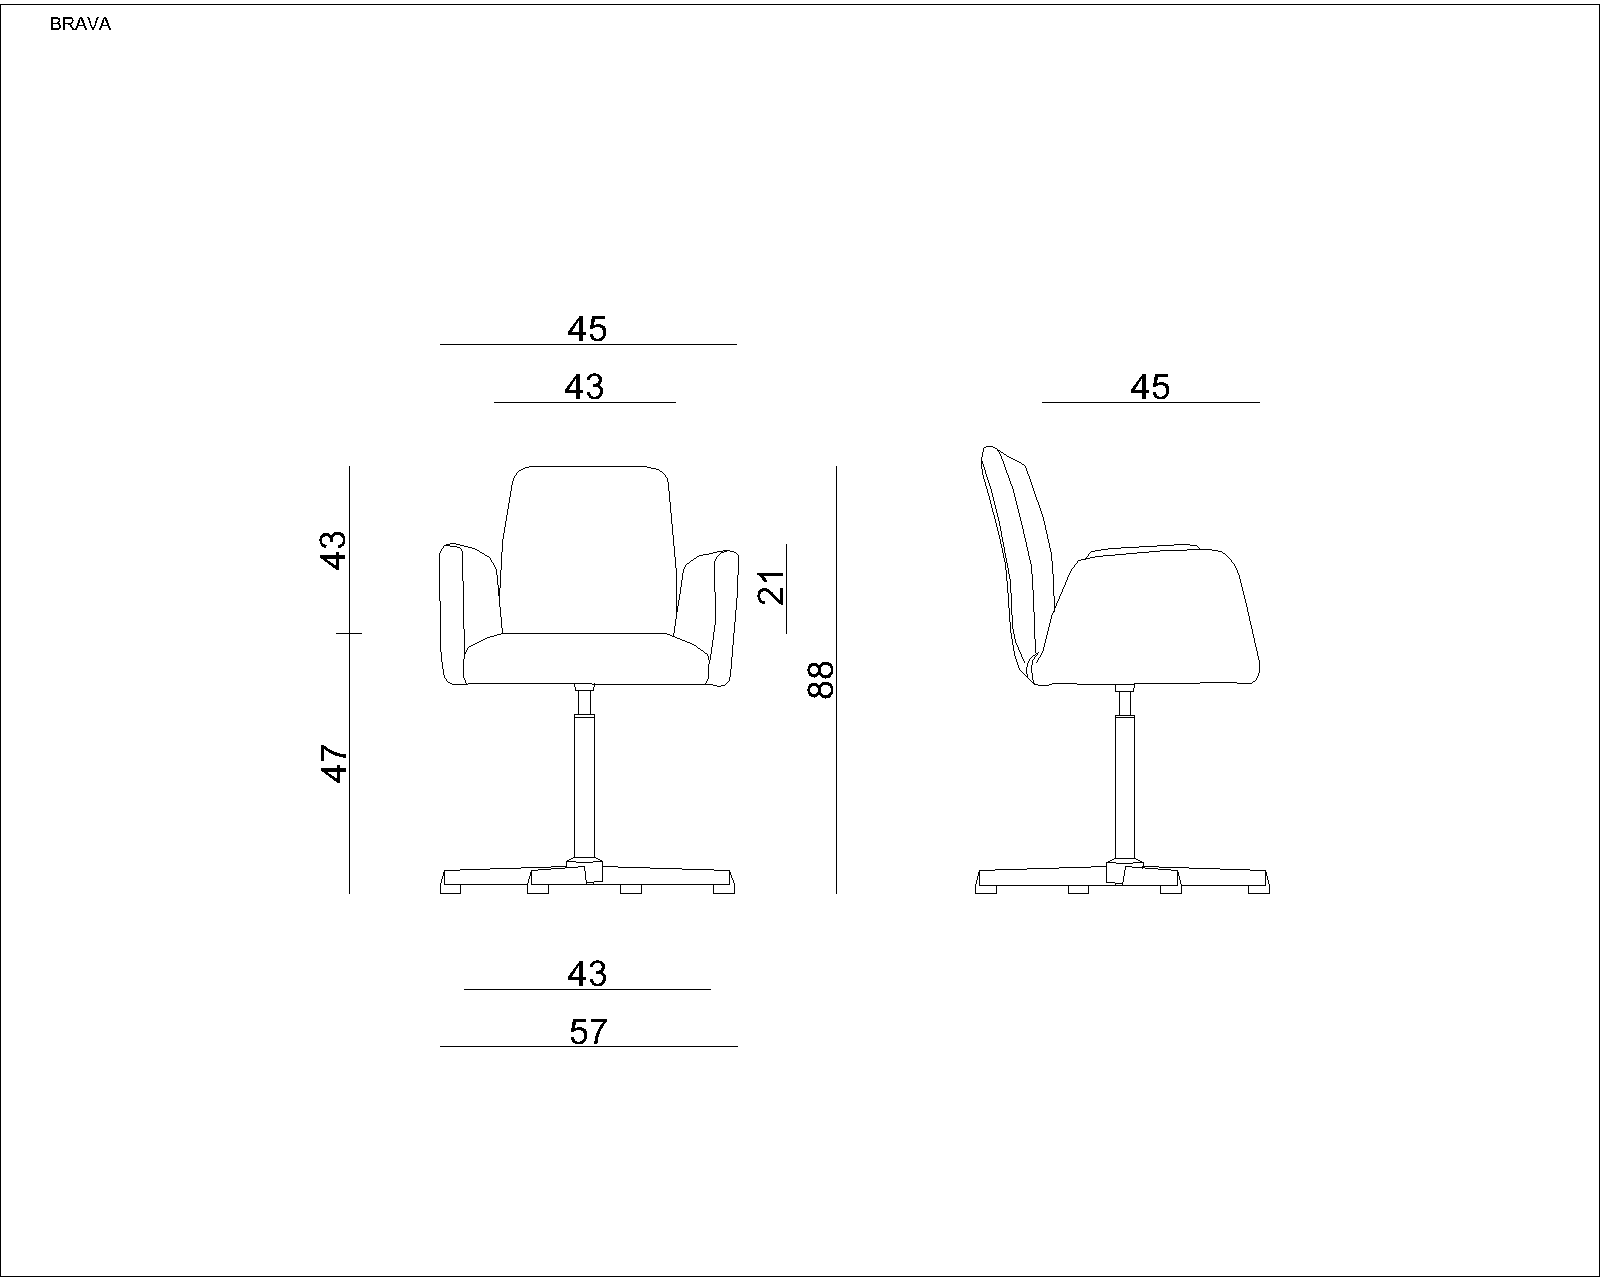 Konferenzstuhl | Hannover | HxBxT 88x57x45cm | Rückenlehne, Sitz & Armlehnen aus Stoff | Traglast 130kg | Grau